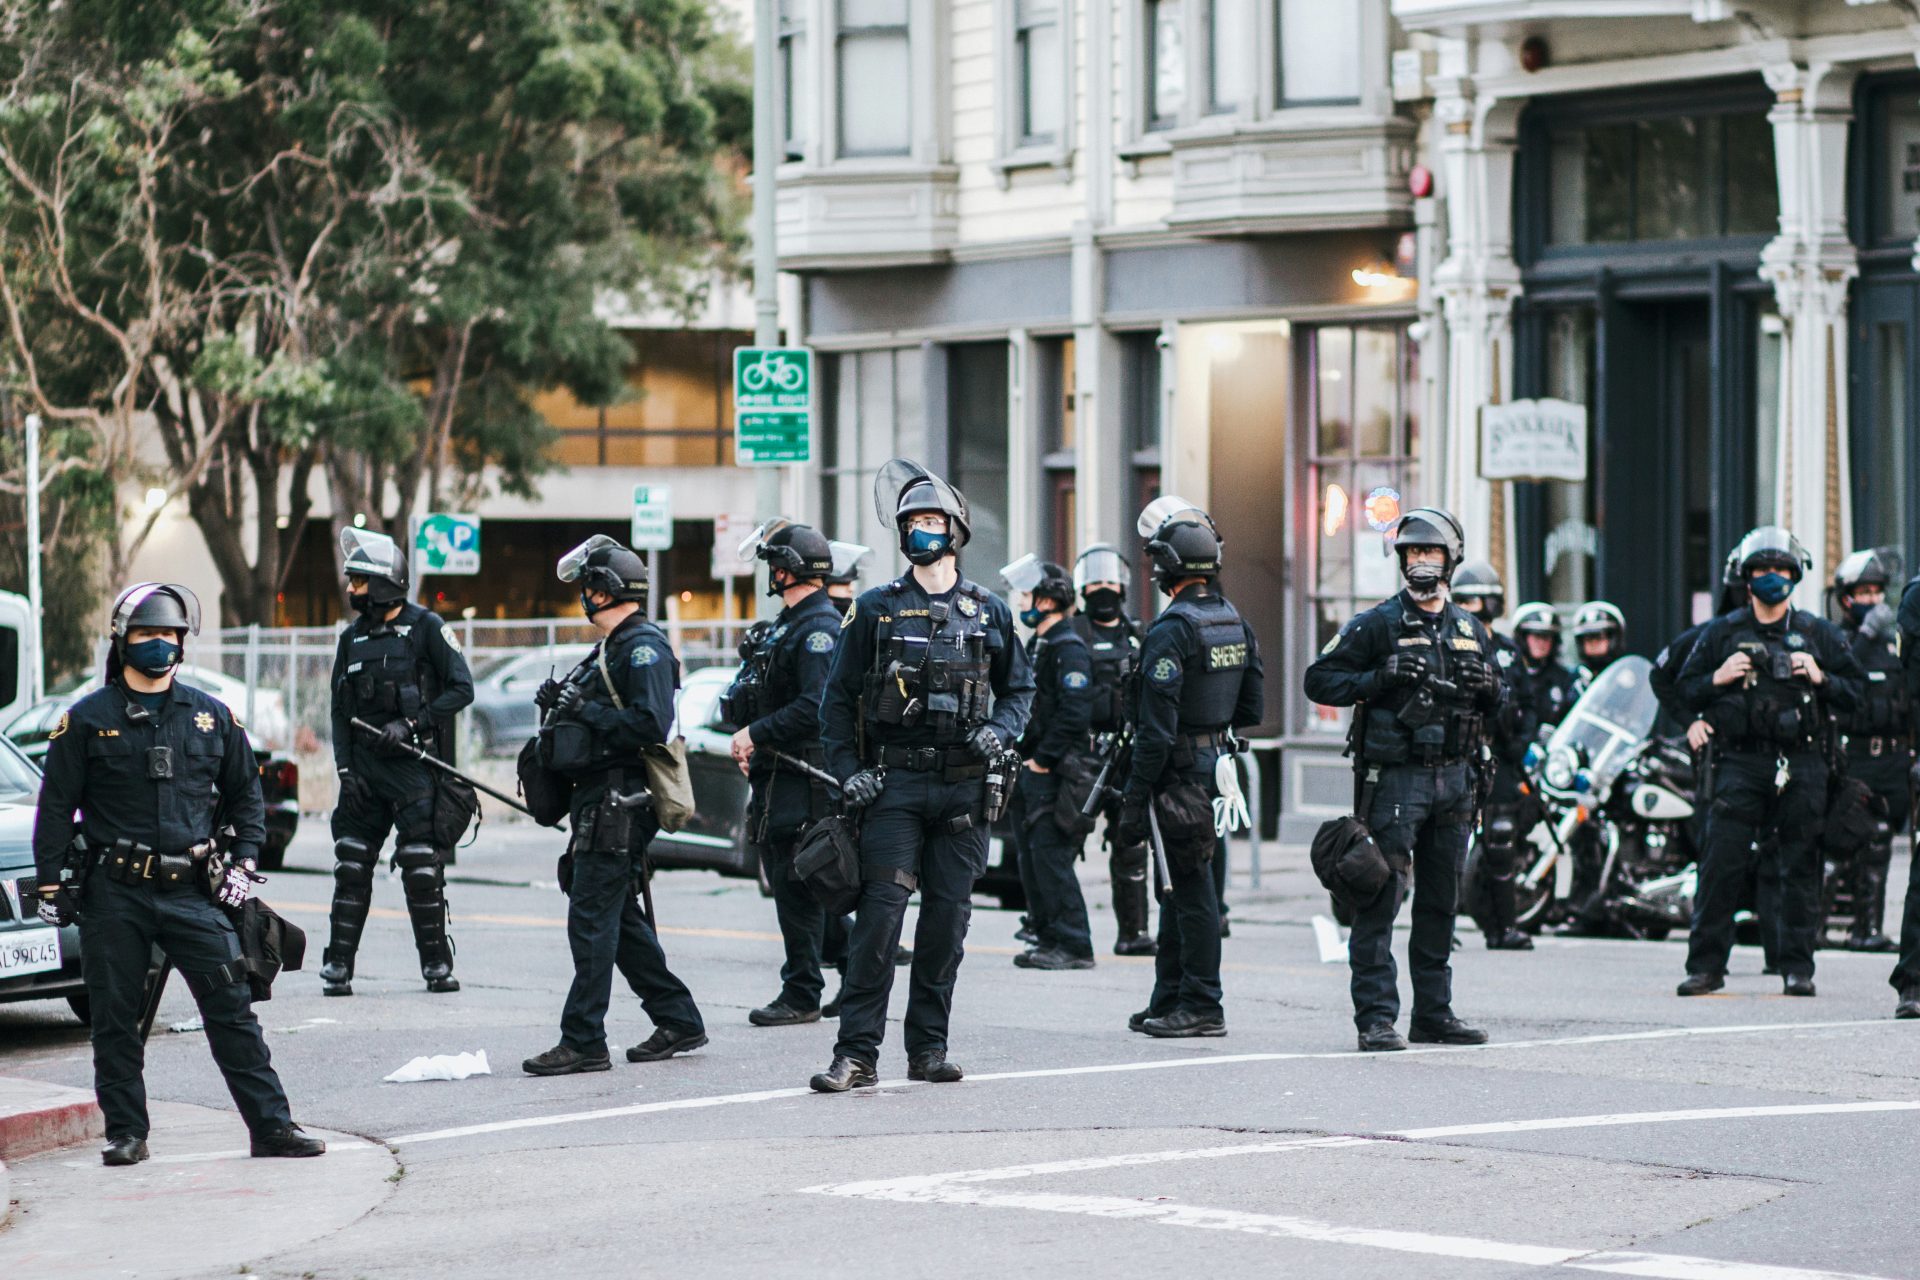 La montée des tendances d'extrême-droite dans la police inquiète en Allemagne et dans d'autres pays